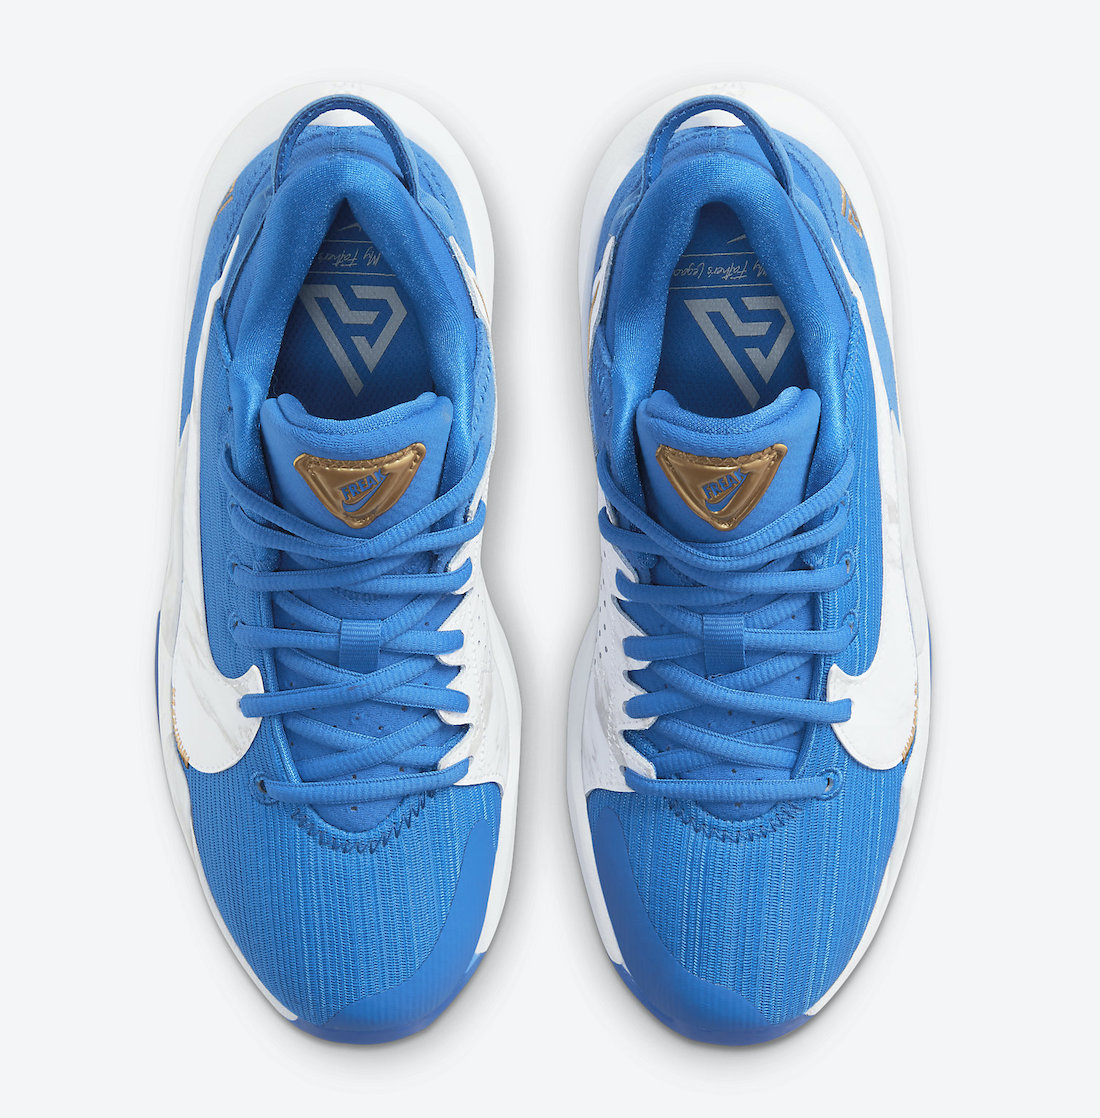 Nike Zoom Freak 2 GS Signal Blue CZ4177-408 Release Date